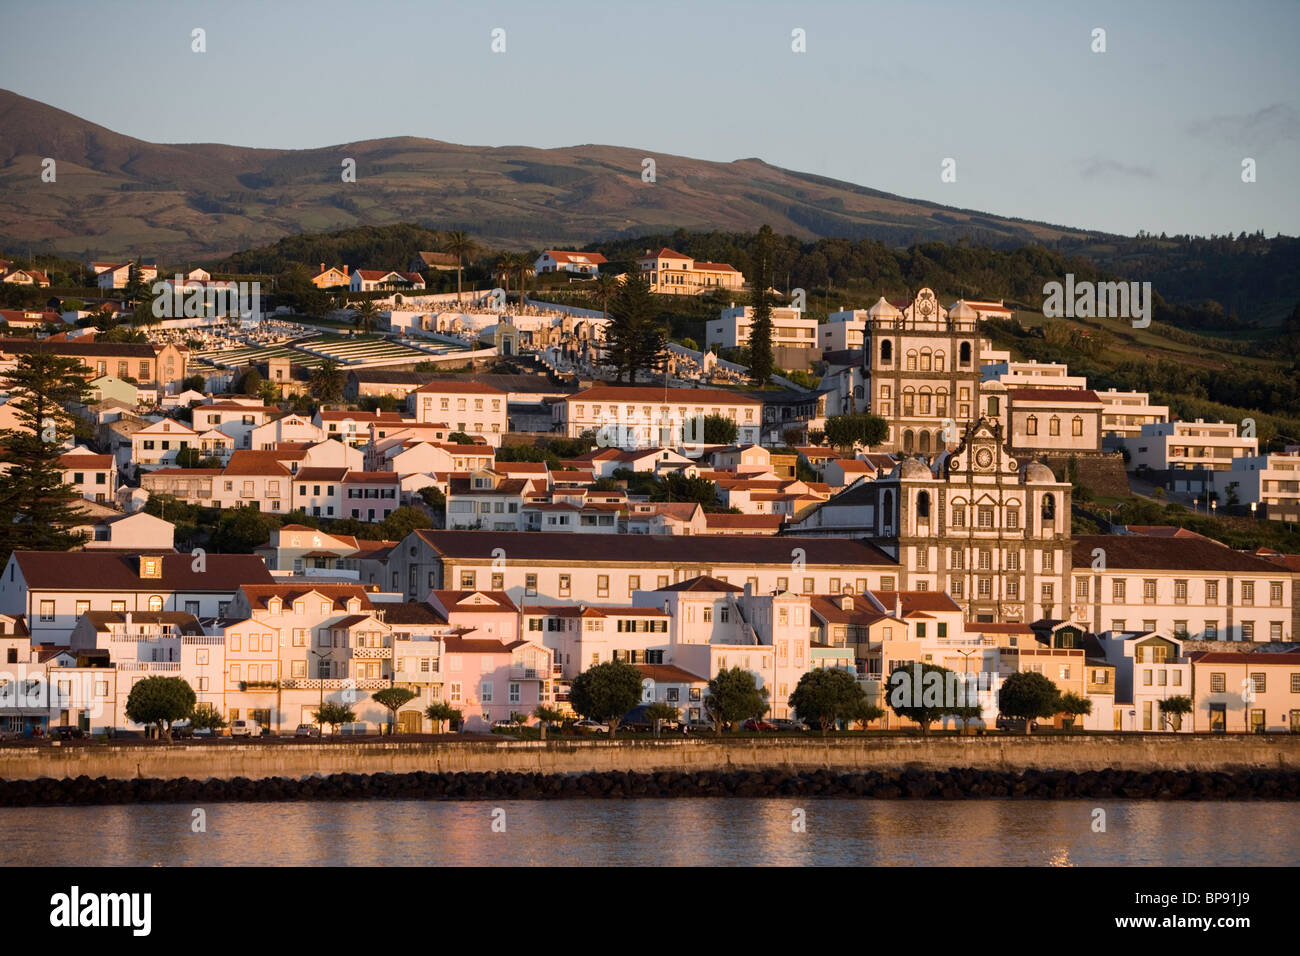 Chiese Parrocchiali nella luce del mattino, Horta, isola di Faial, Azzorre, Portogallo, Europa Foto Stock